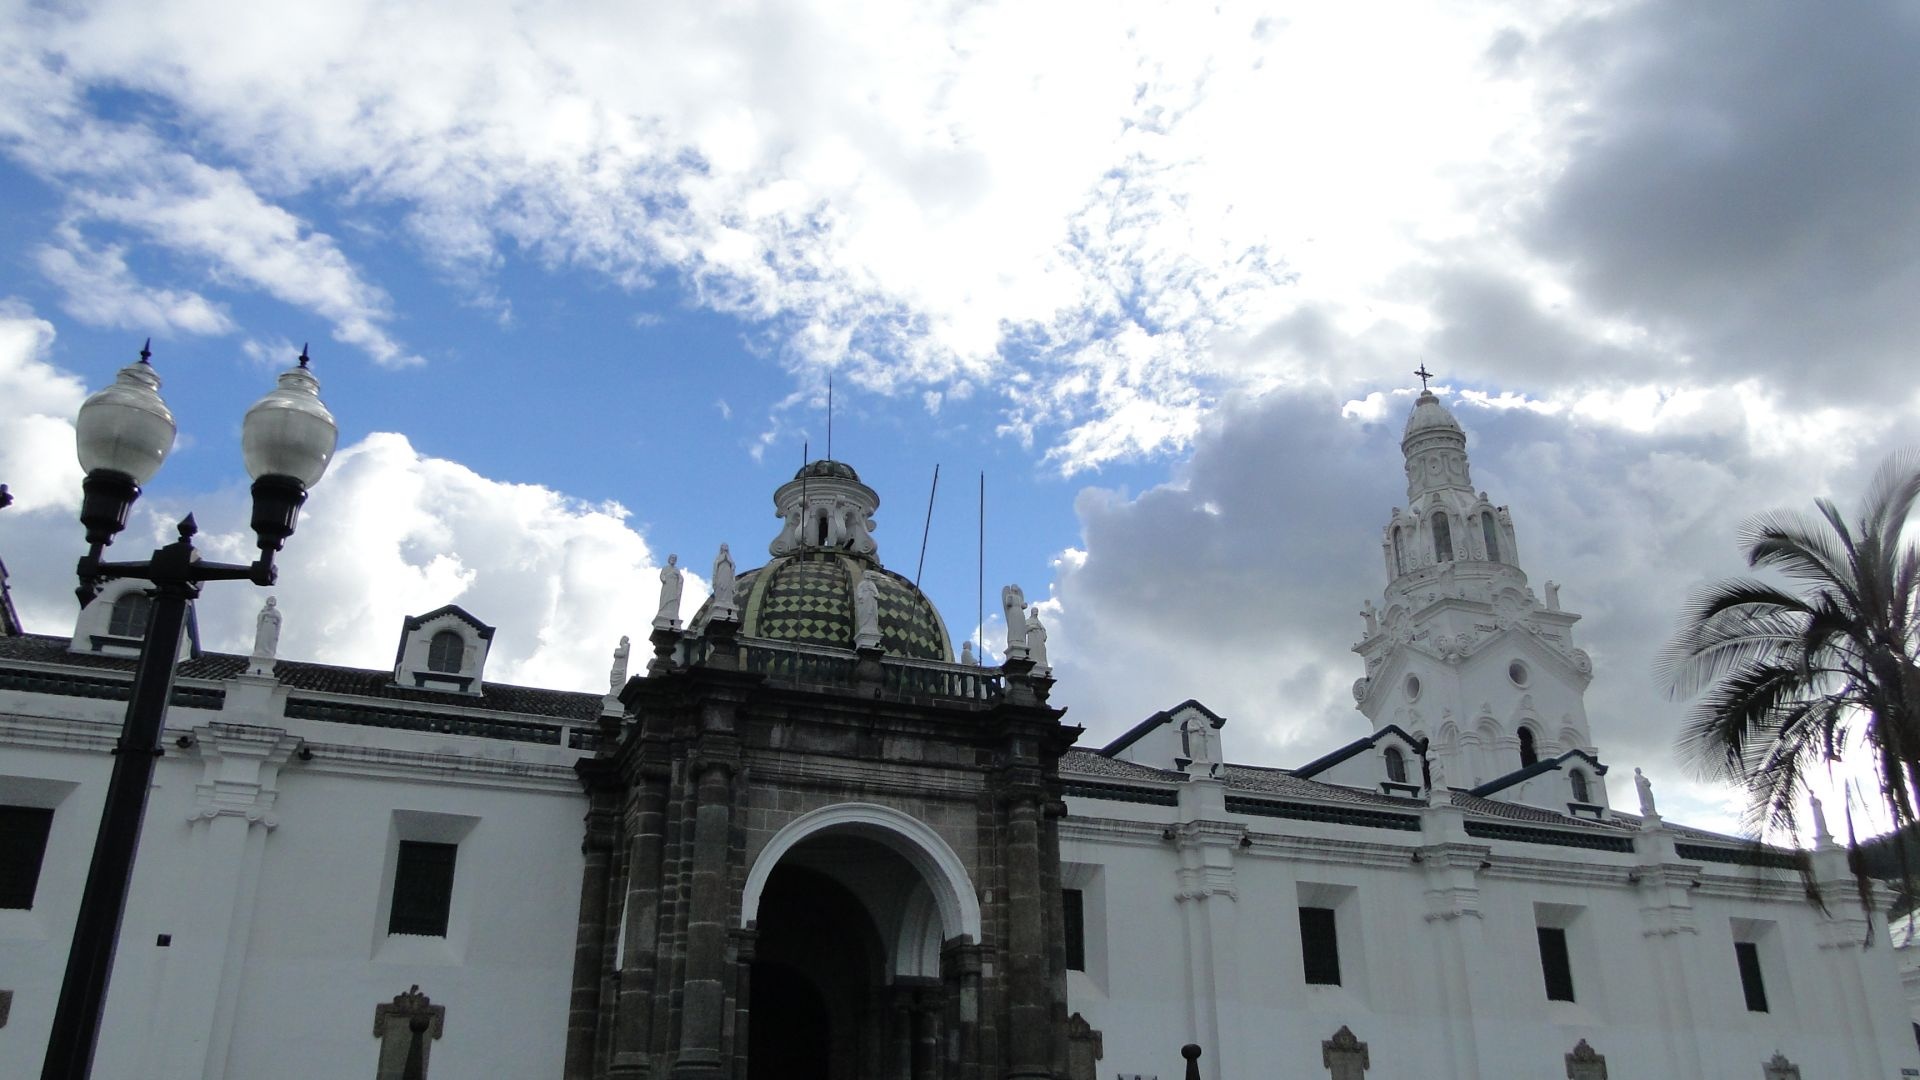 Quito tour, Churches in Quito, Historic center of Quito, Instinto Ecuador, 1920x1080 Full HD Desktop